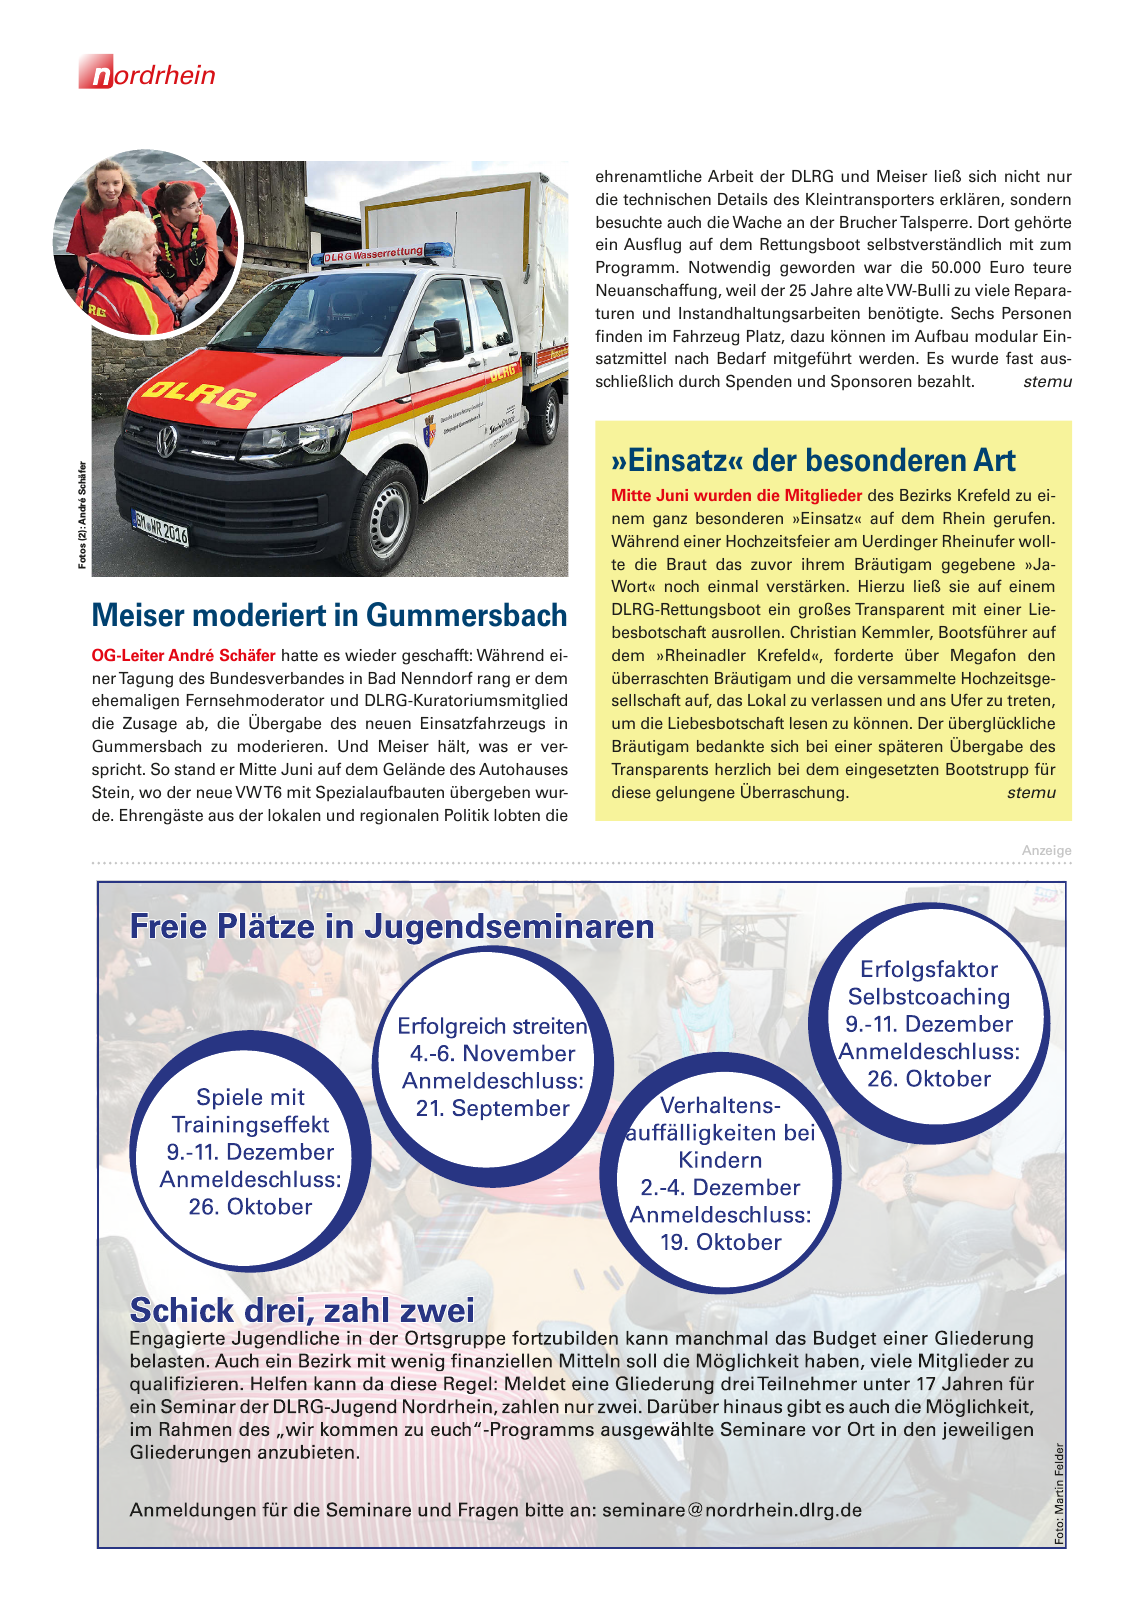 Vorschau Lebensretter 3/2016 - Regionalausgabe Nordrhein Seite 16